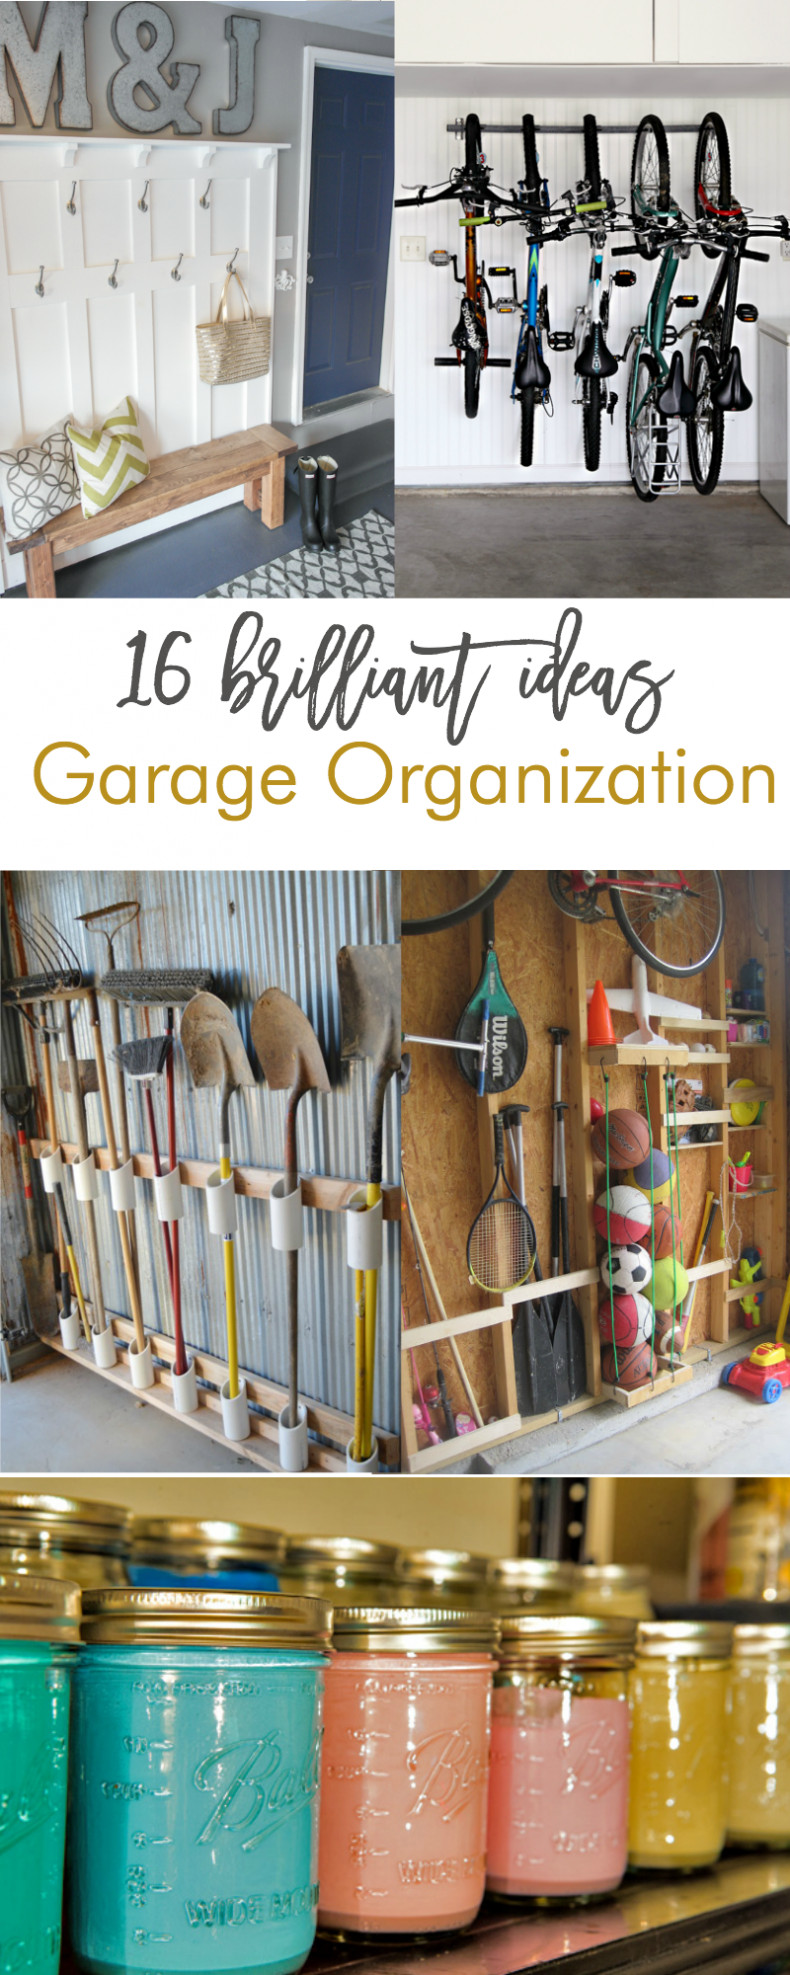 Diy Garage Organizers
 16 Brilliant DIY Garage Organization Ideas